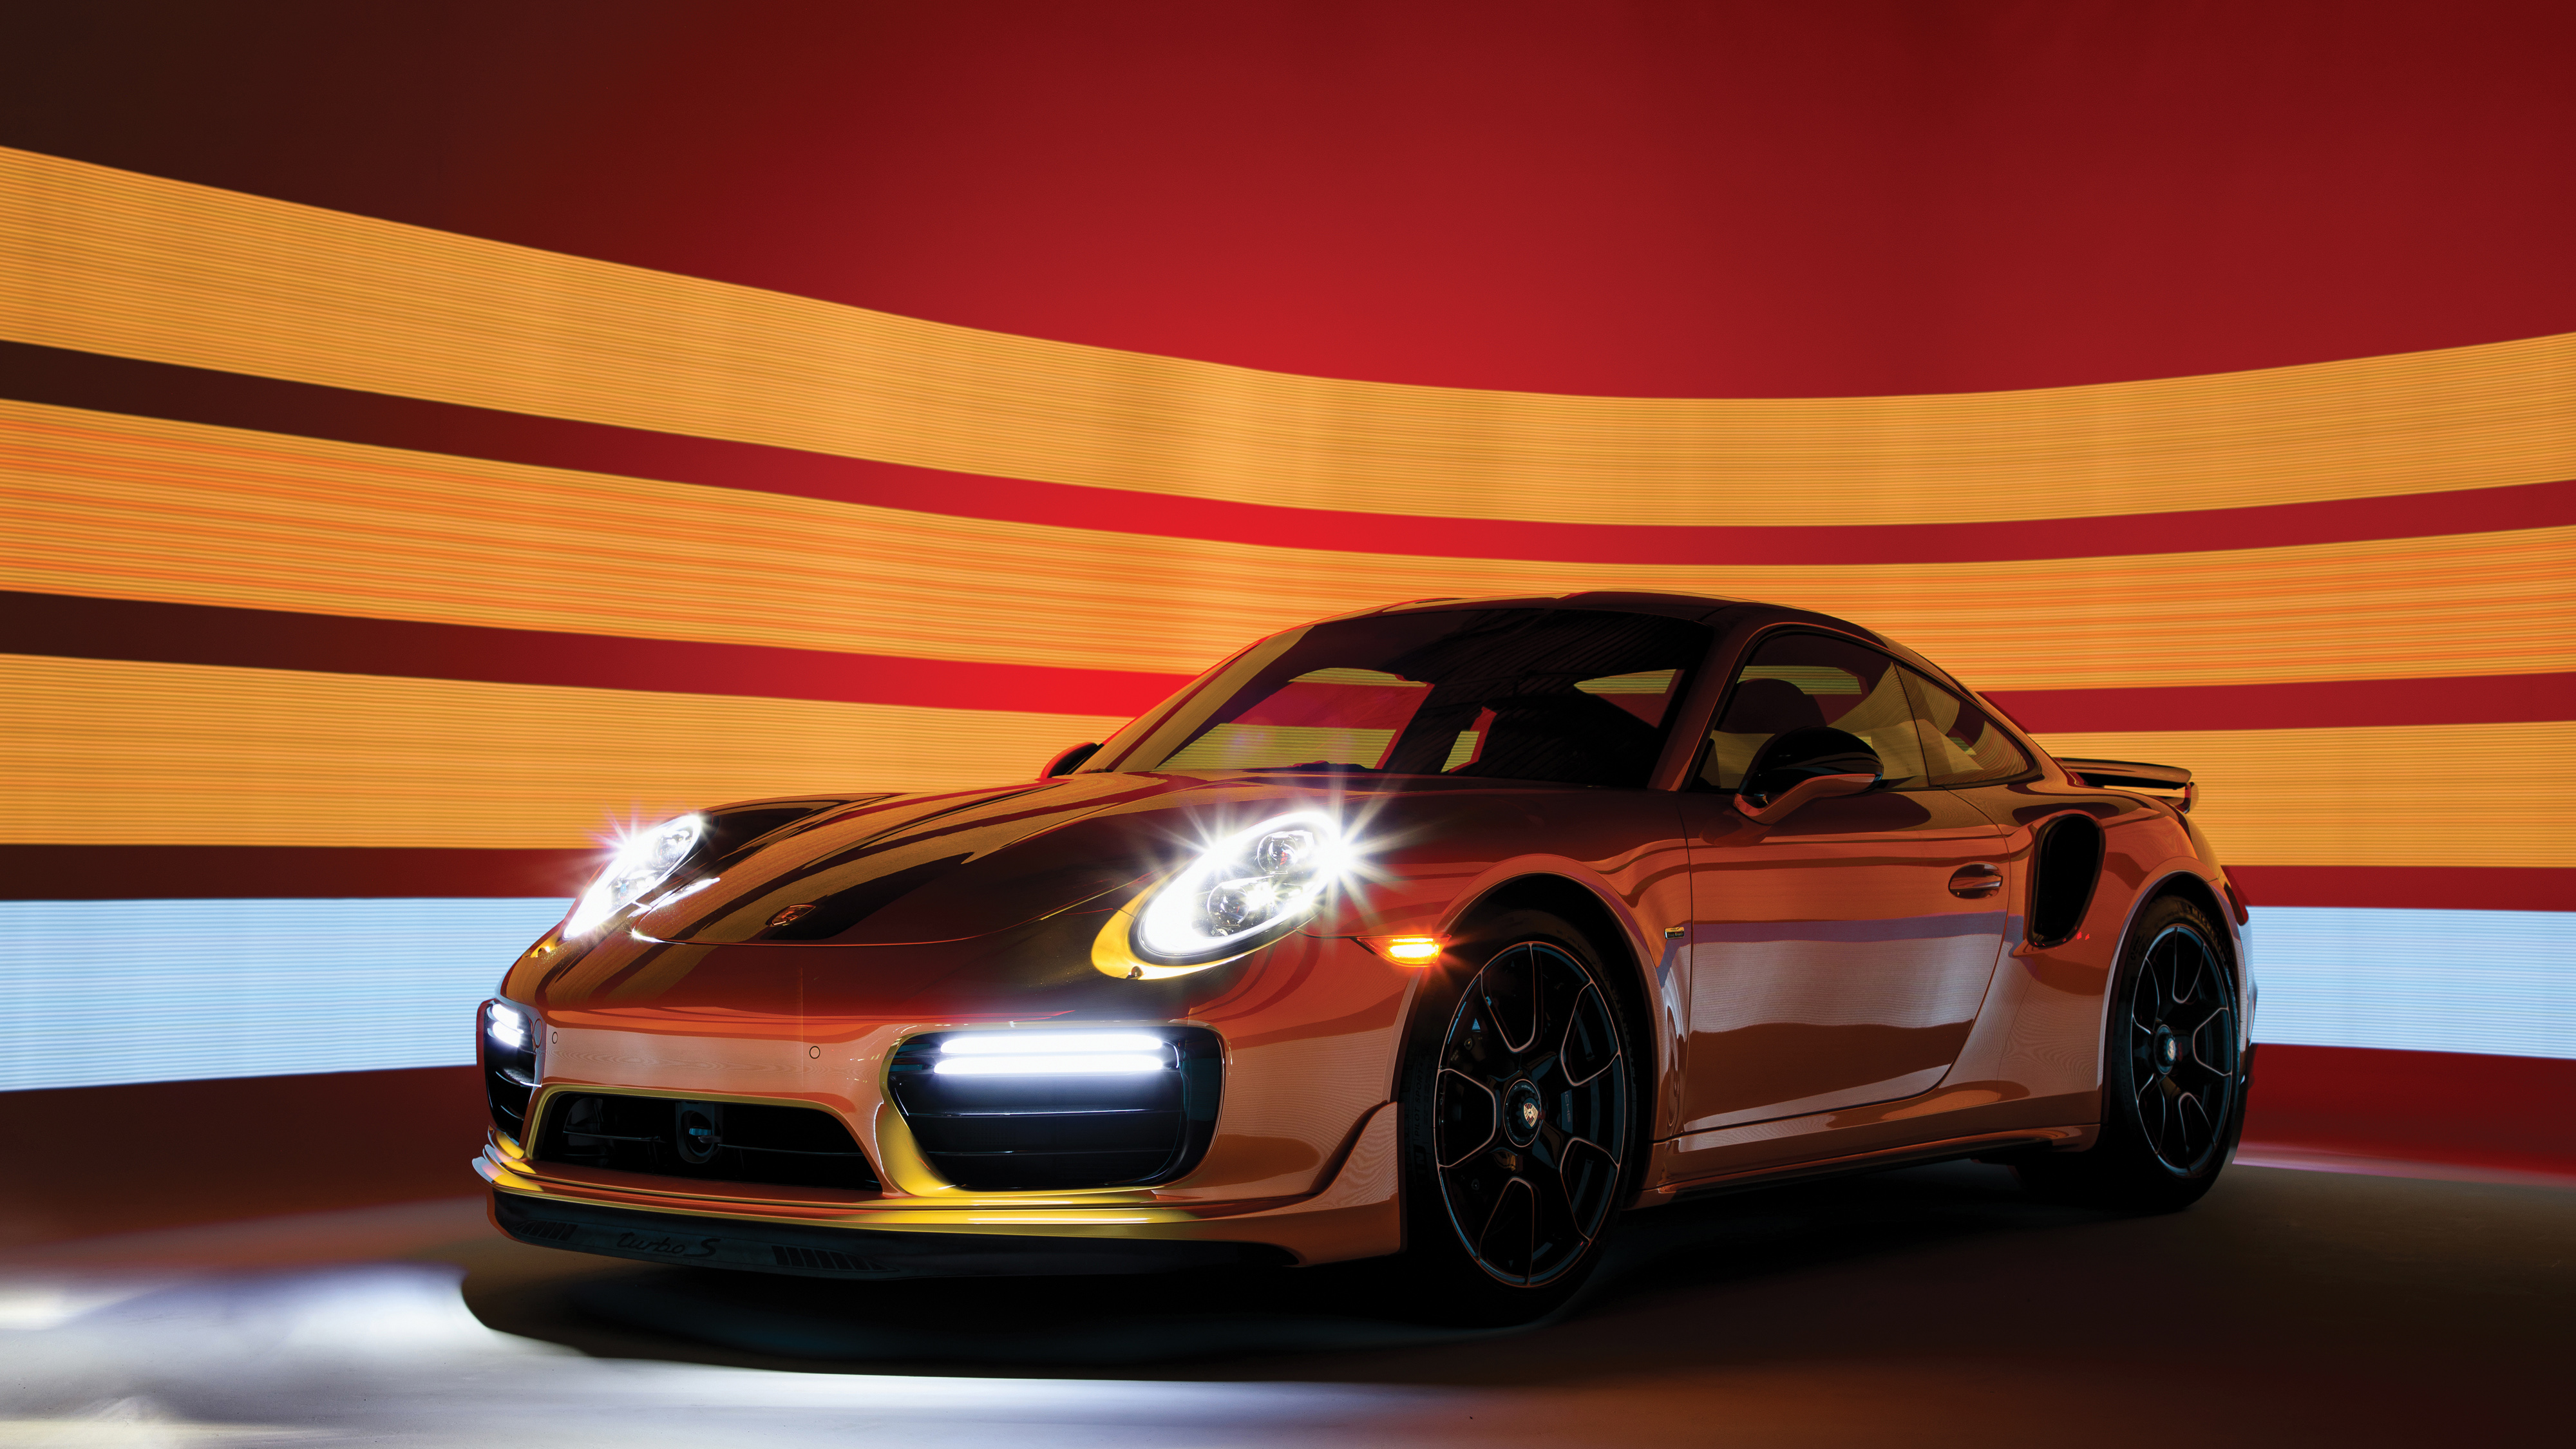 Porsche 911 Turbo S Exclusive Series - HD Wallpaper 